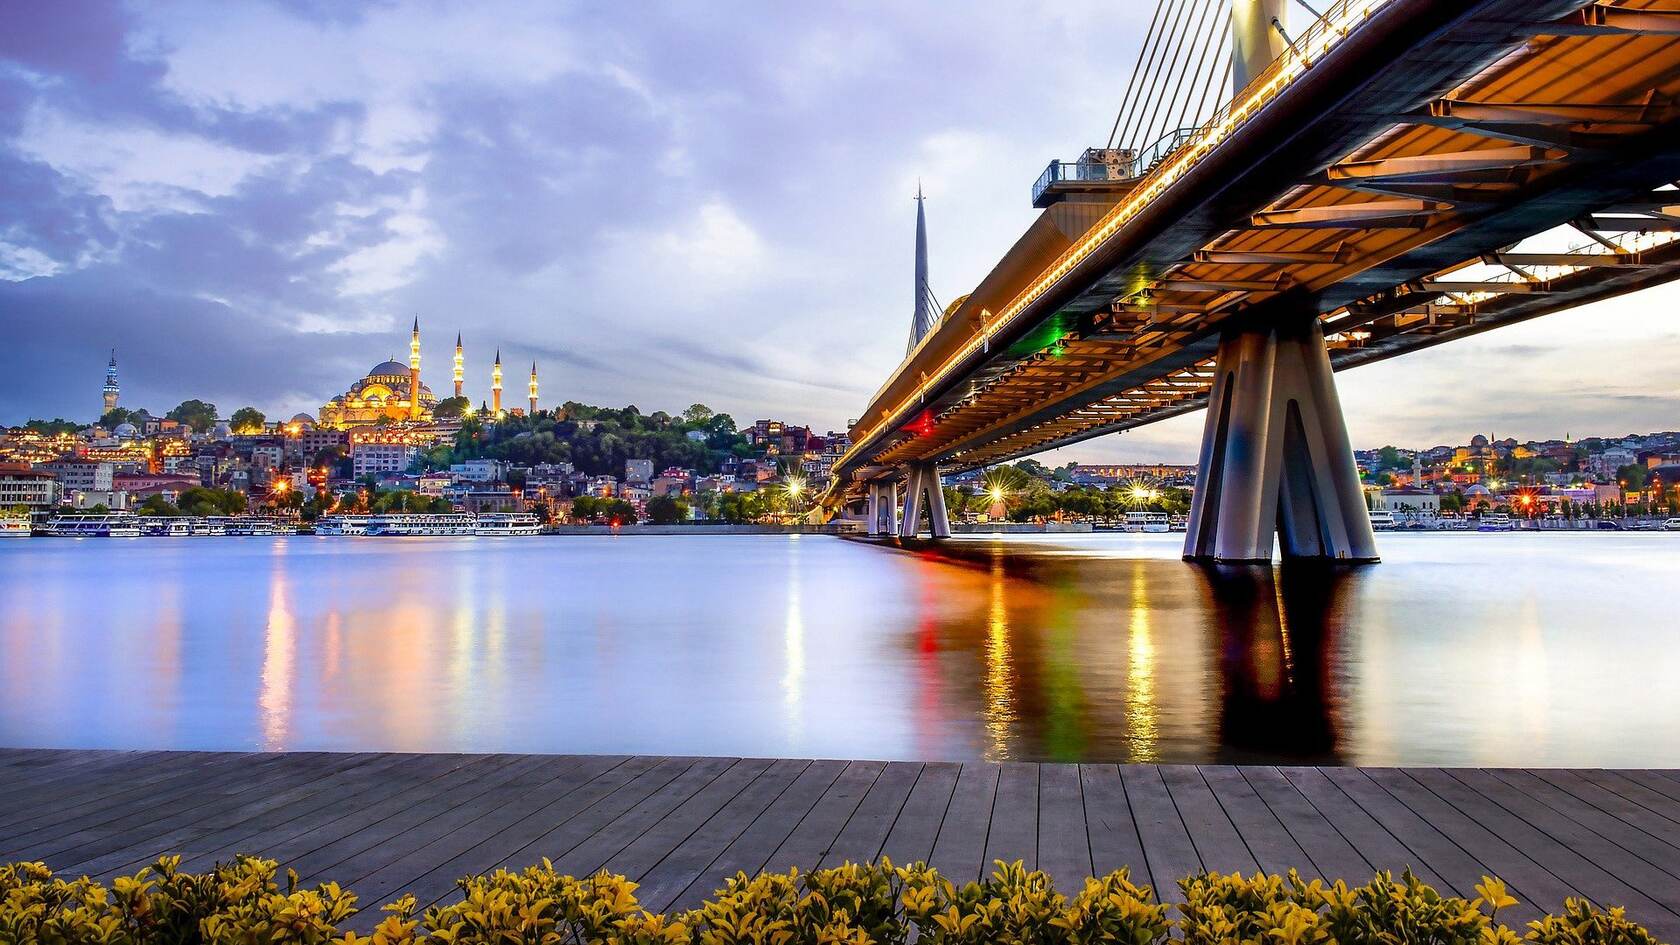 伊斯坦布尔 城市 大桥 桥梁 城市风光 灯火唯美桌面壁纸图片第1张图片